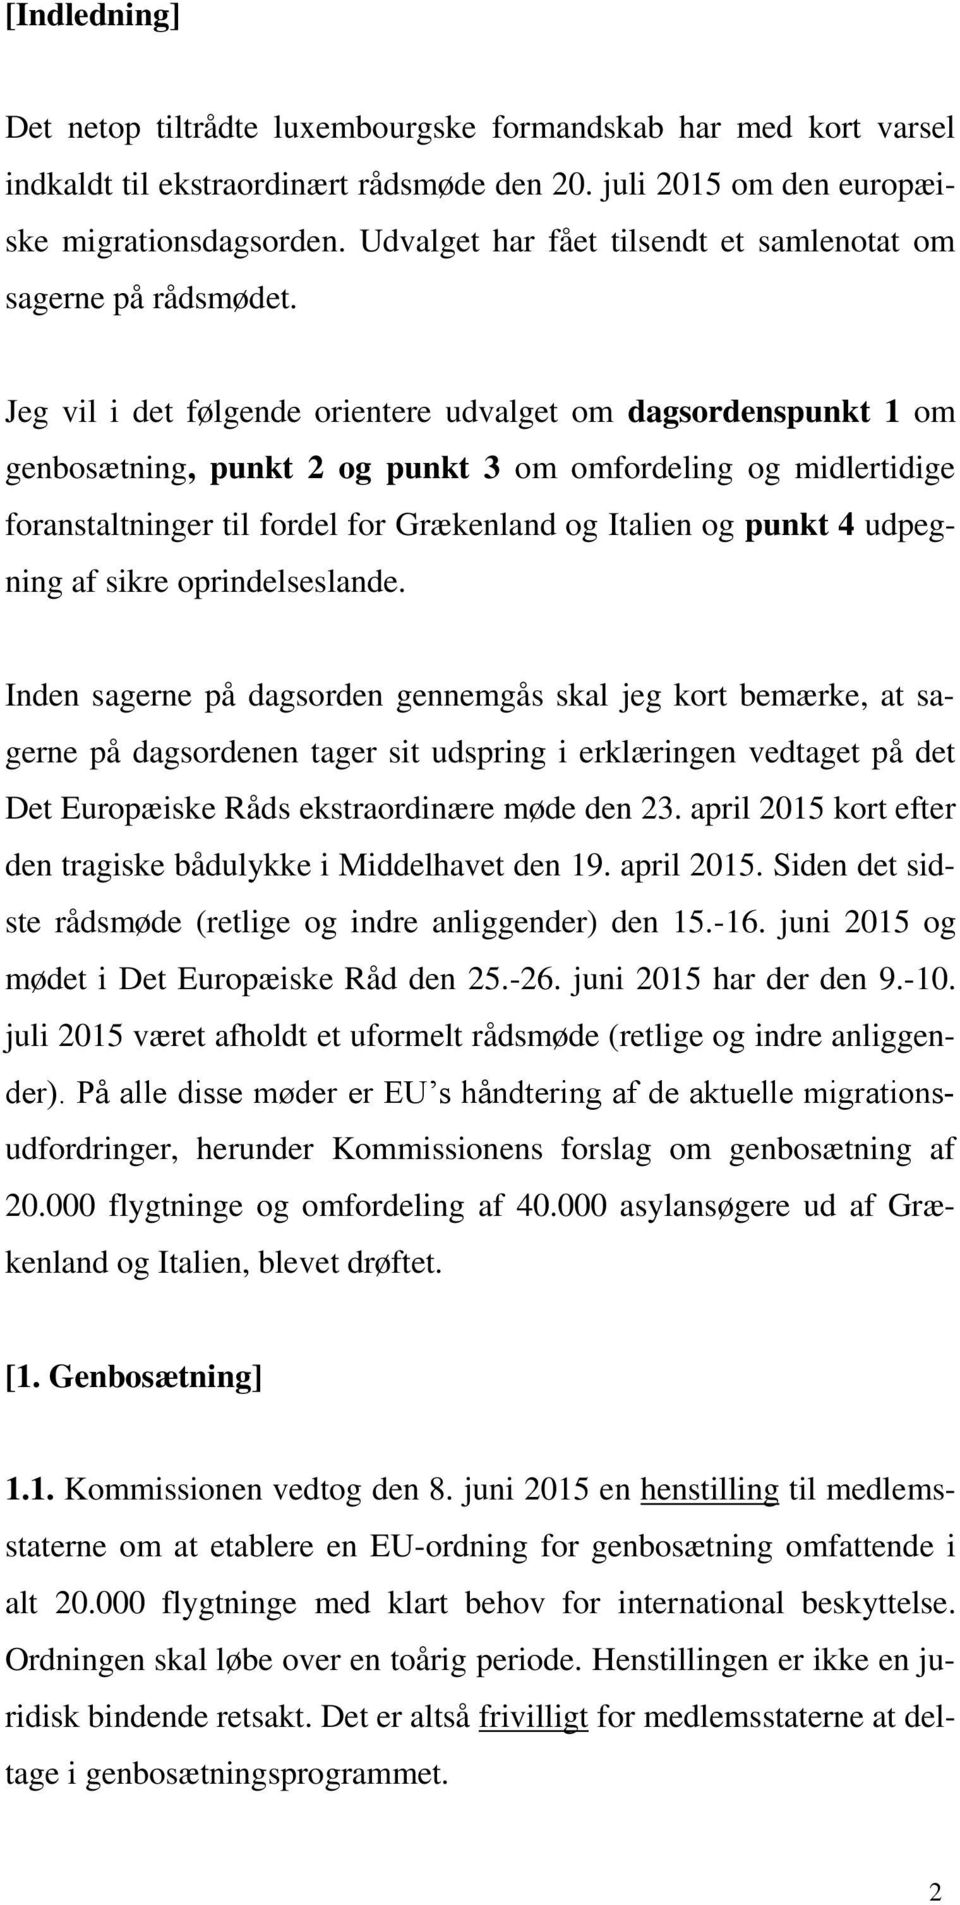 Jeg vil i det følgende orientere udvalget om dagsordenspunkt 1 om genbosætning, punkt 2 og punkt 3 om omfordeling og midlertidige foranstaltninger til fordel for Grækenland og Italien og punkt 4